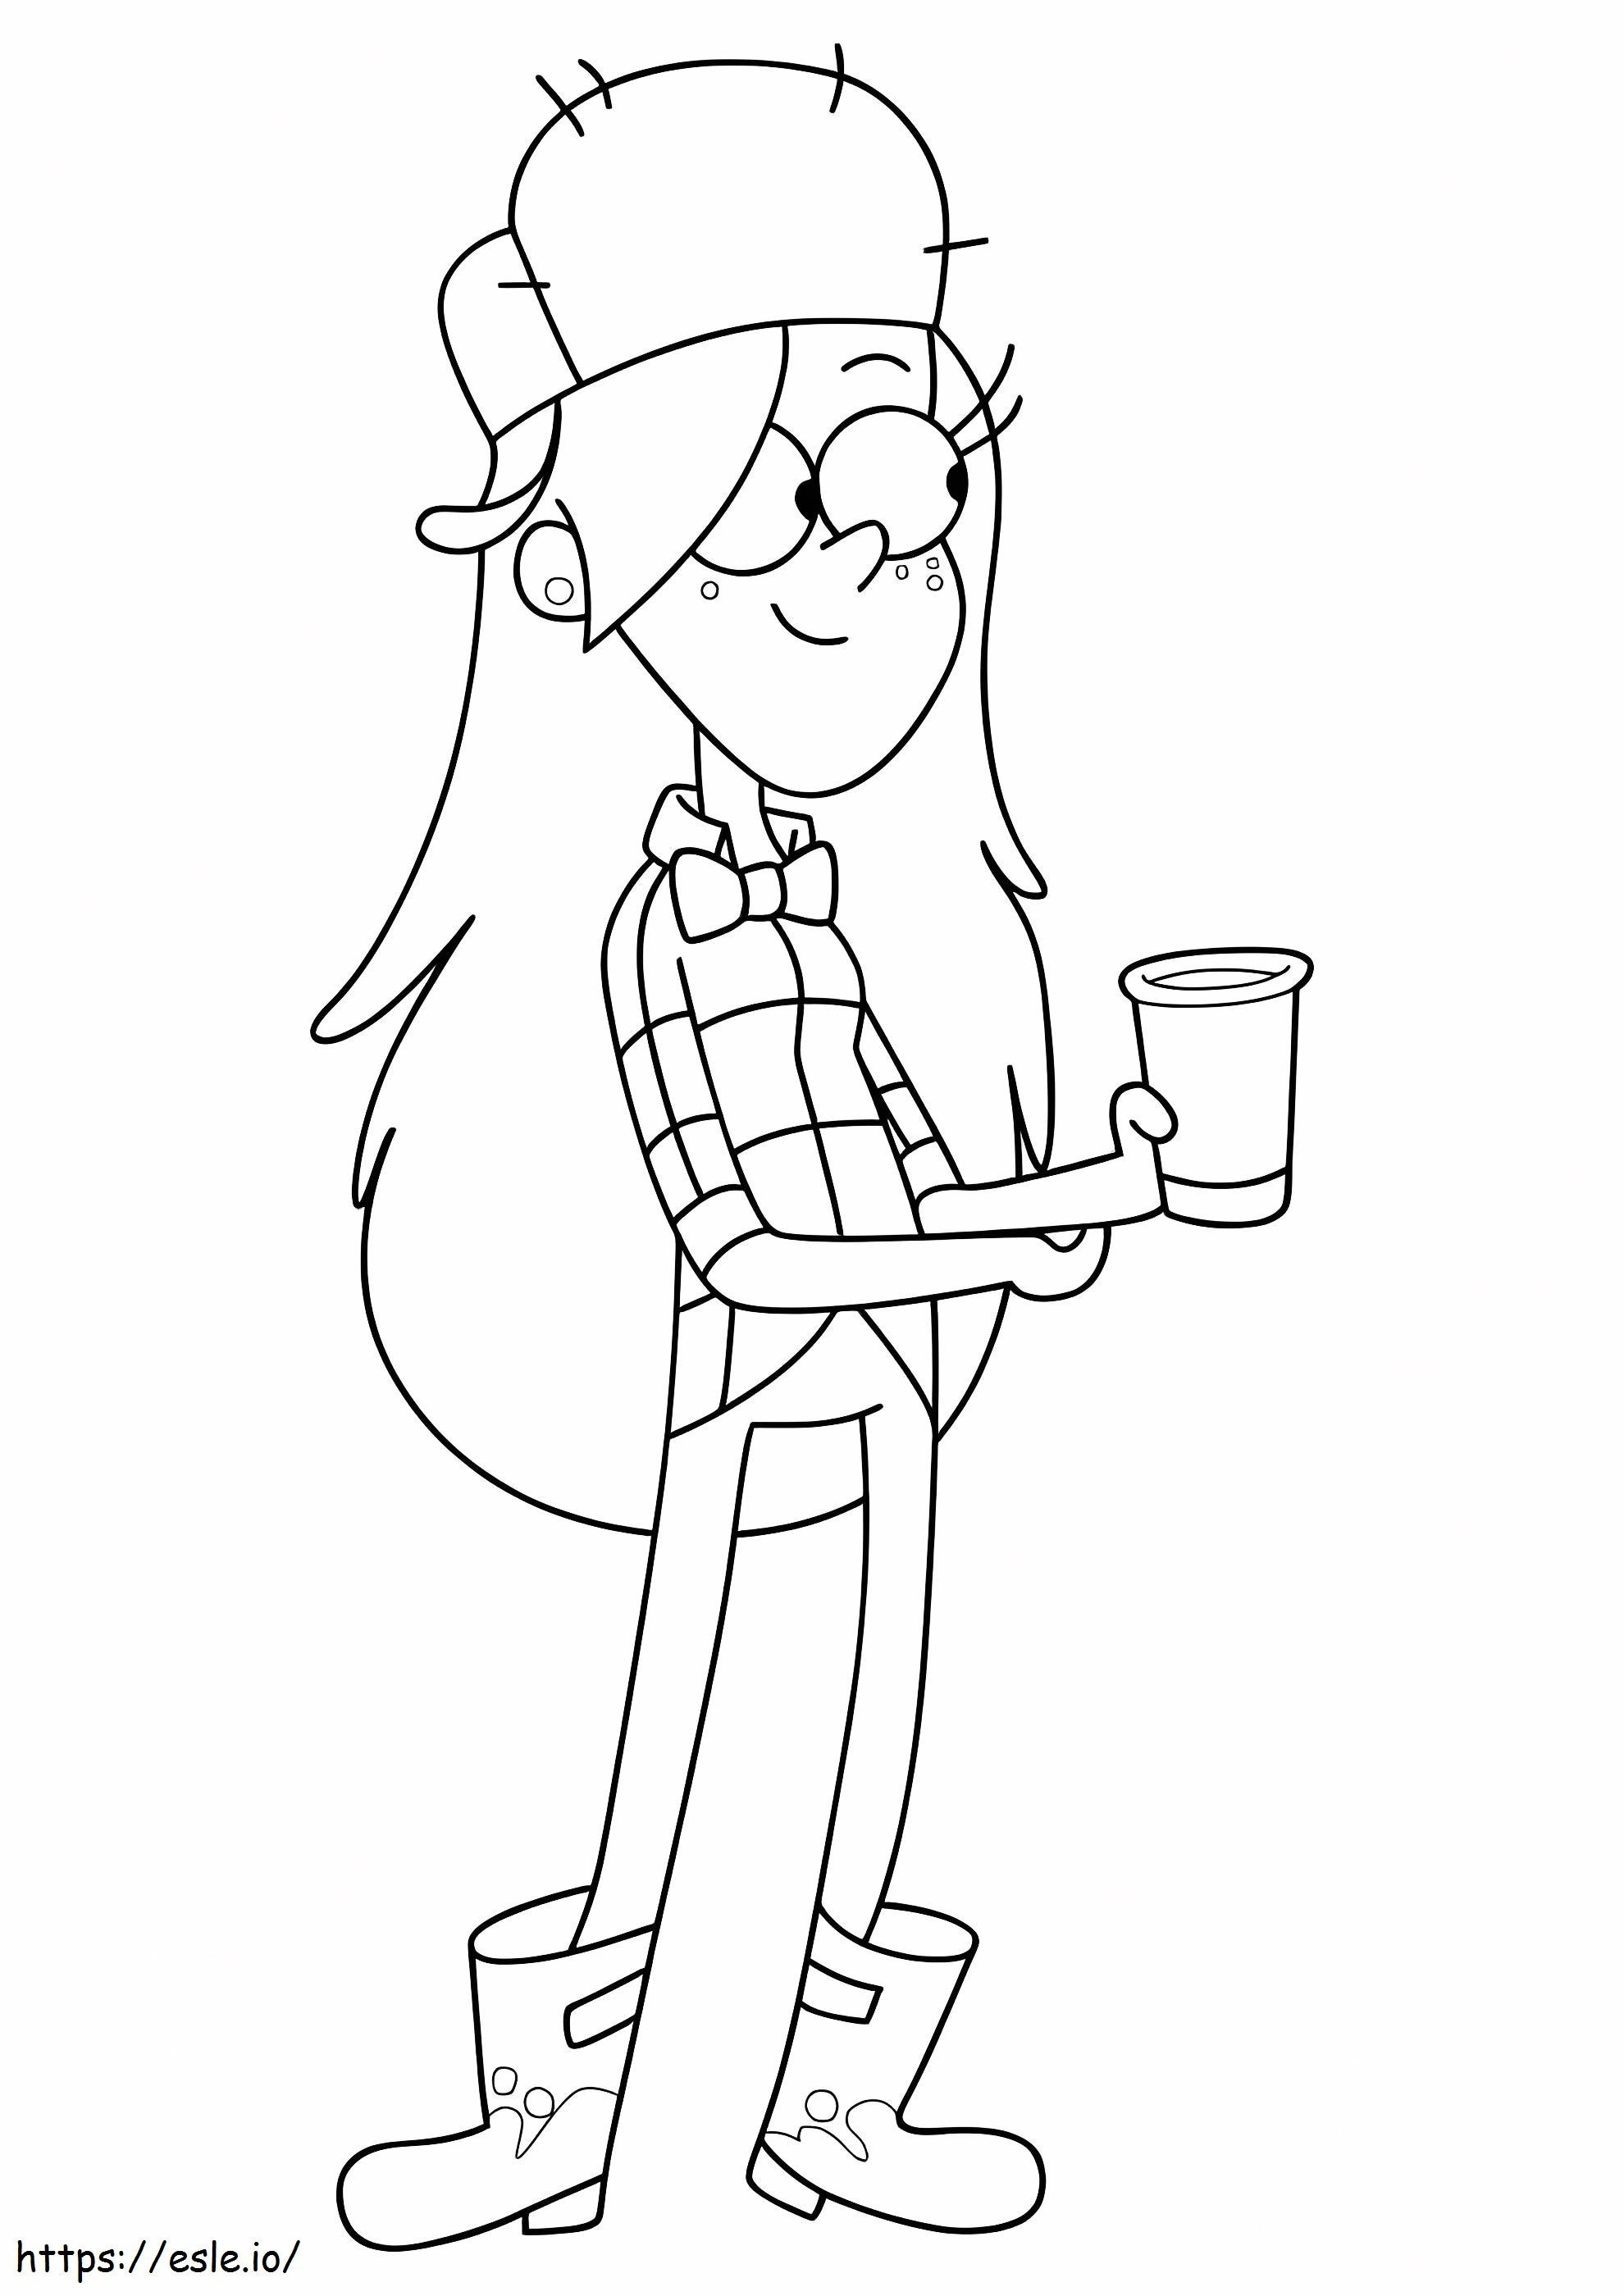 Wendy con in mano una tazza di caffè da colorare